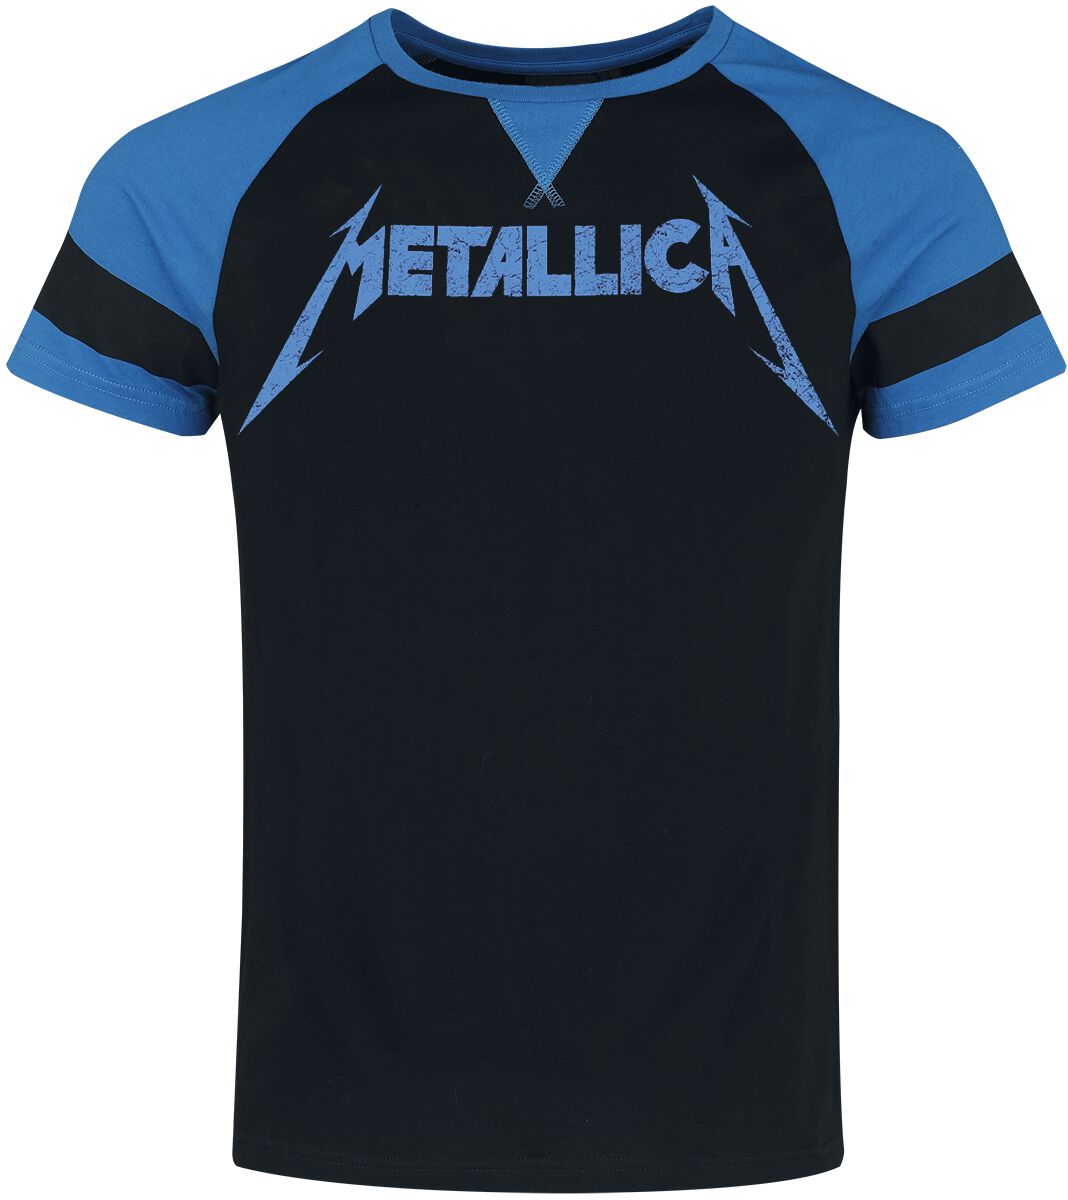 Metallica T-Shirt - EMP Signature Collection - S bis XXL - für Männer - Größe XXL - schwarz/blau  - EMP exklusives Merchandise!